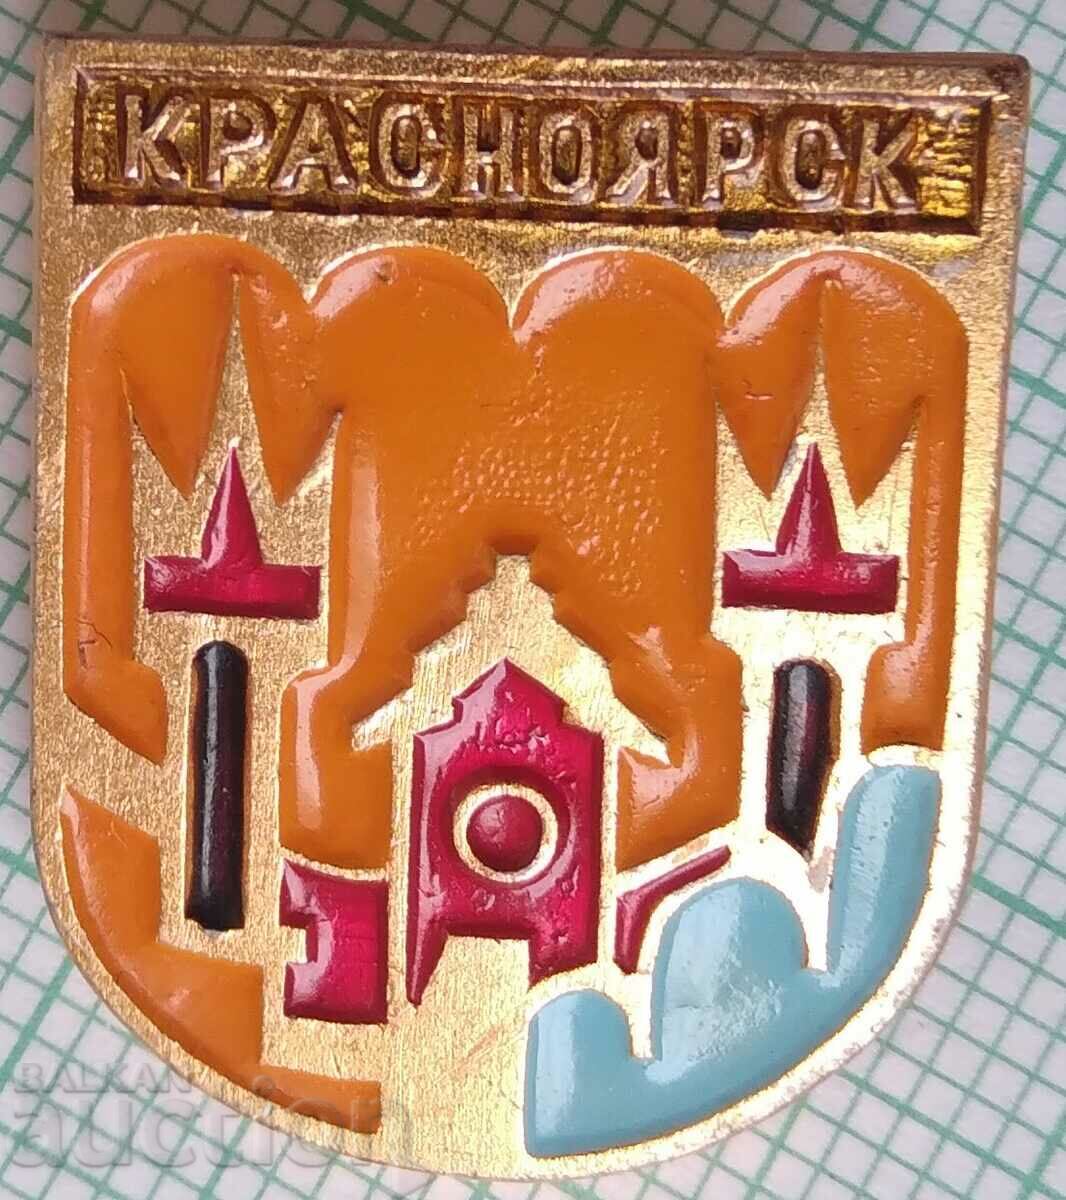 16082 Σήμα - Κρασνογιάρσκ